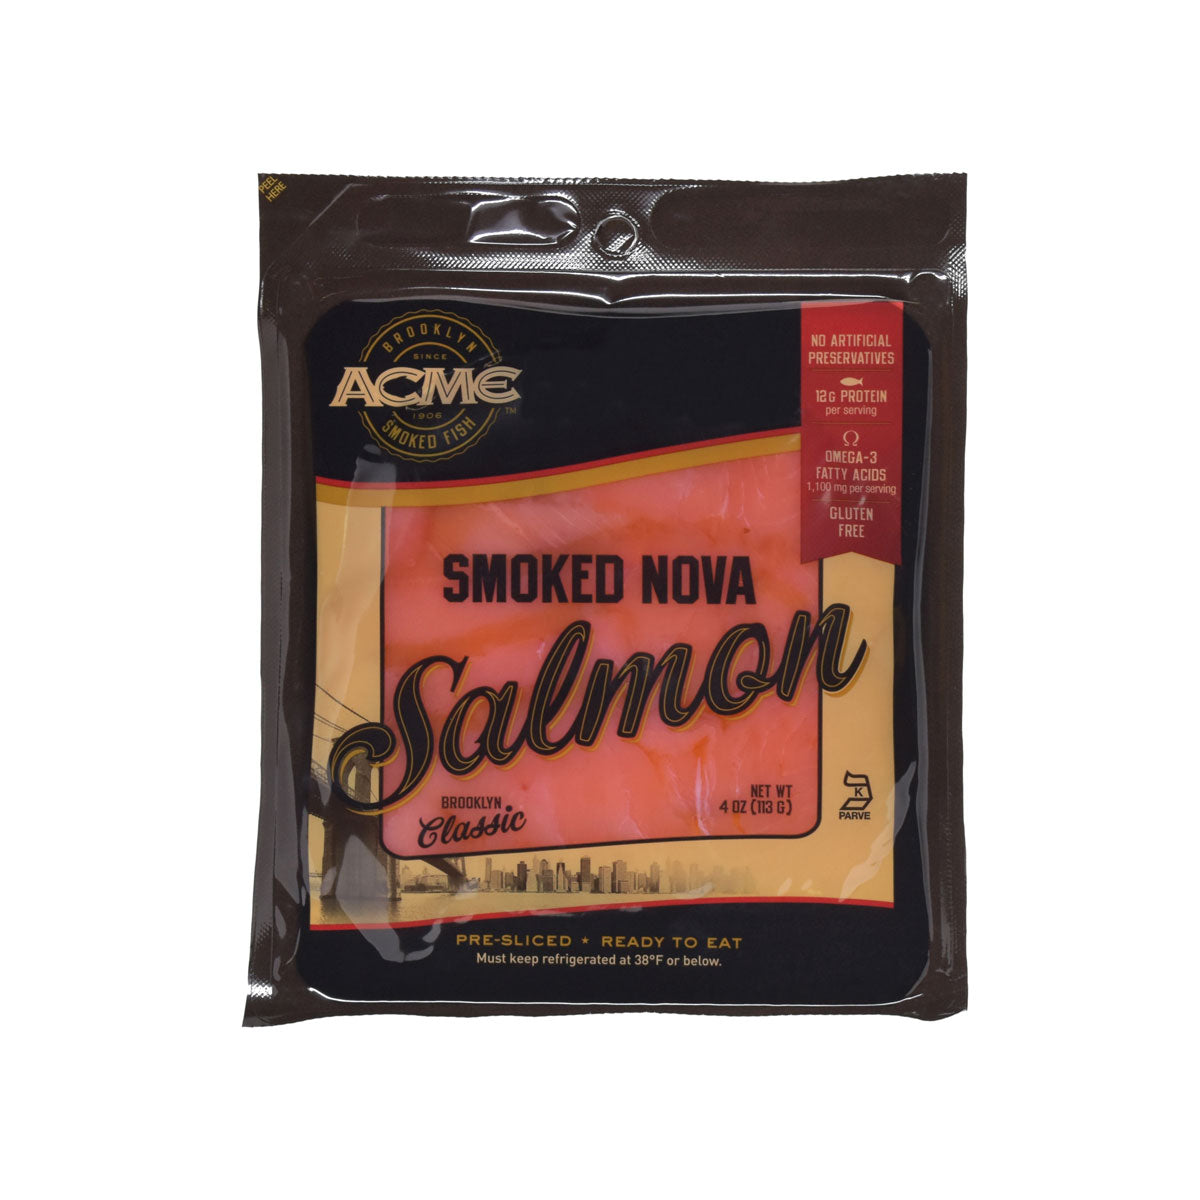 Acme Smoked Fish Nova Smoked Salmon 4 Oz Bag